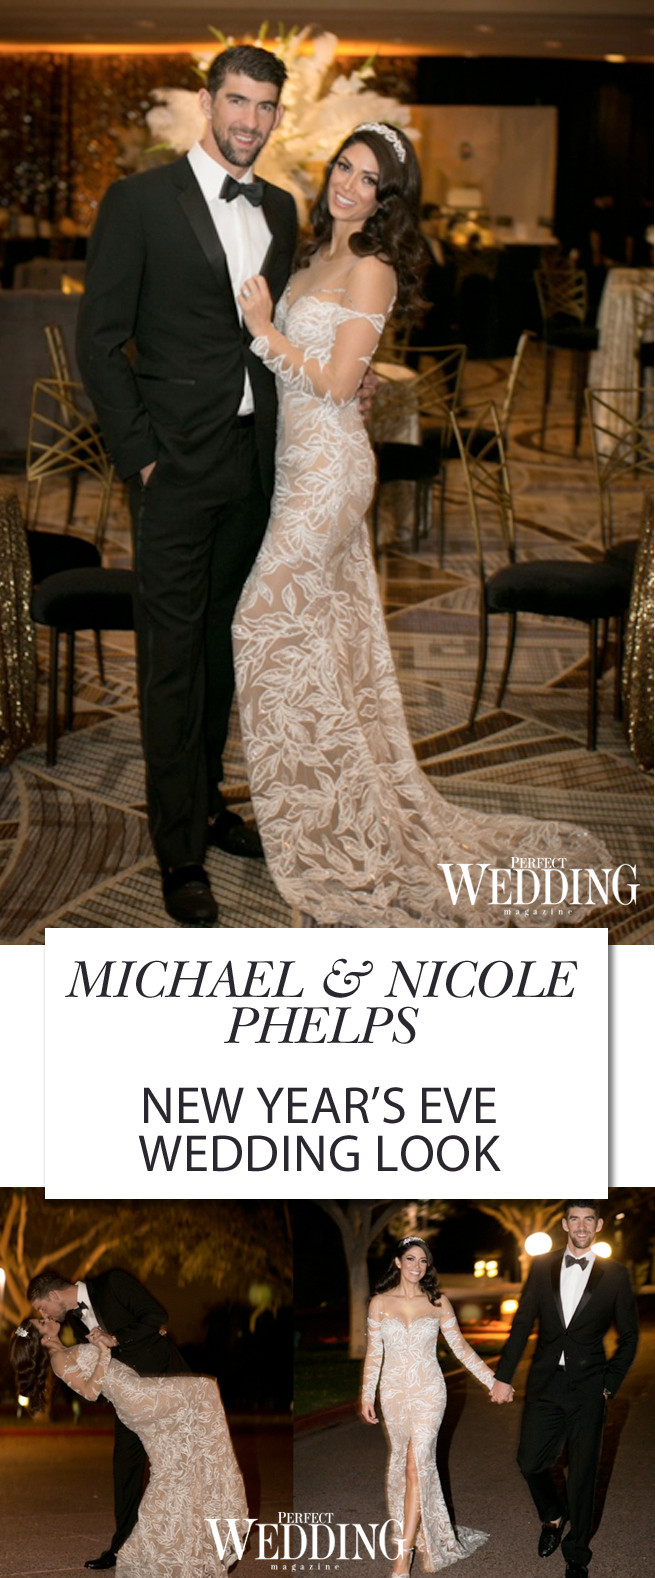 Michael Phelps, Nicole Phelps, Wedding